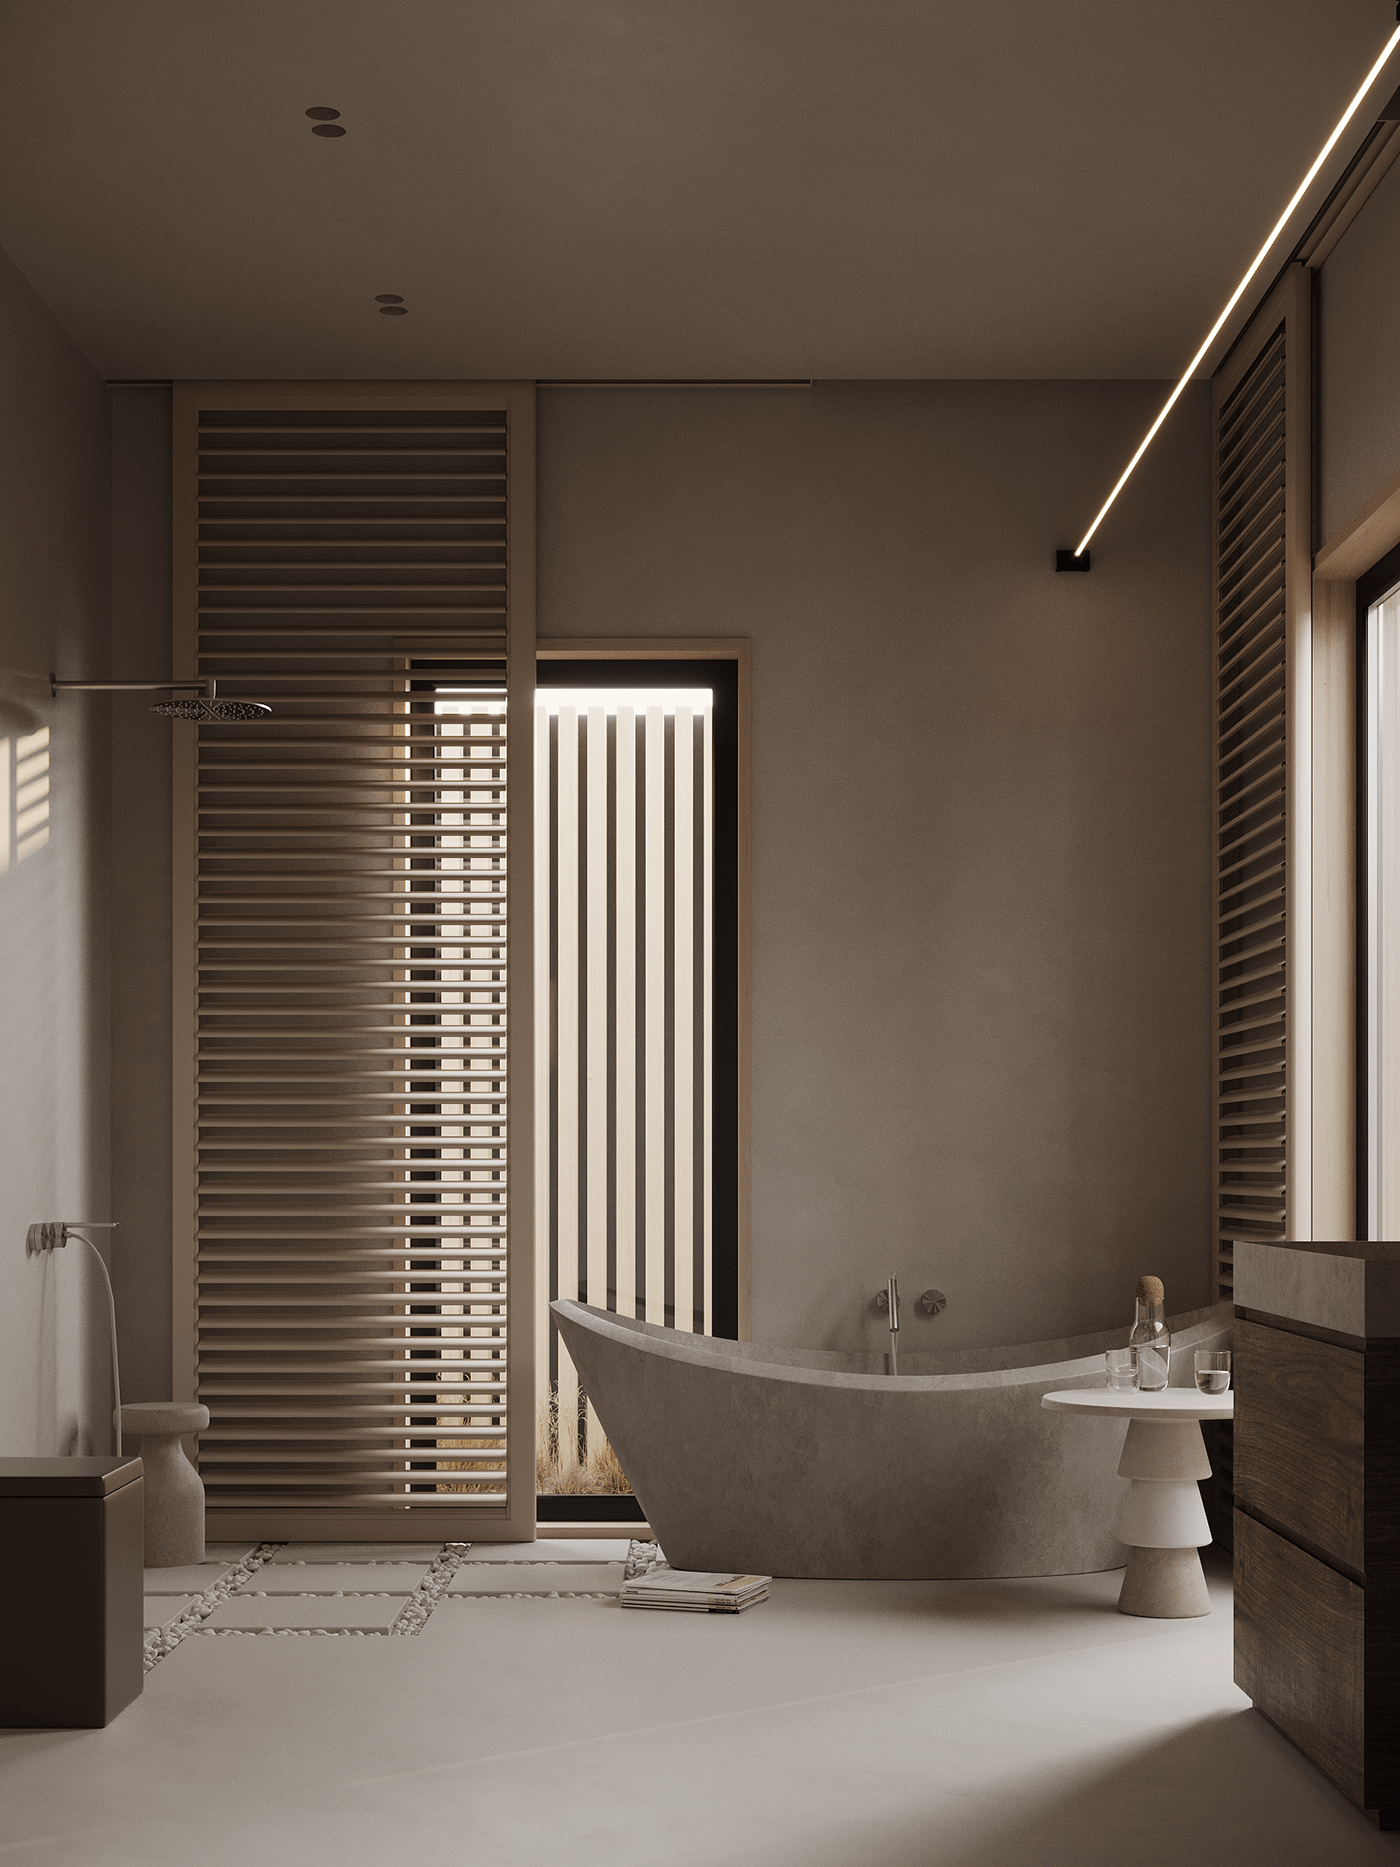 衛浴空間延續整體設計風格，也是讓人感到最放鬆舒適的地方